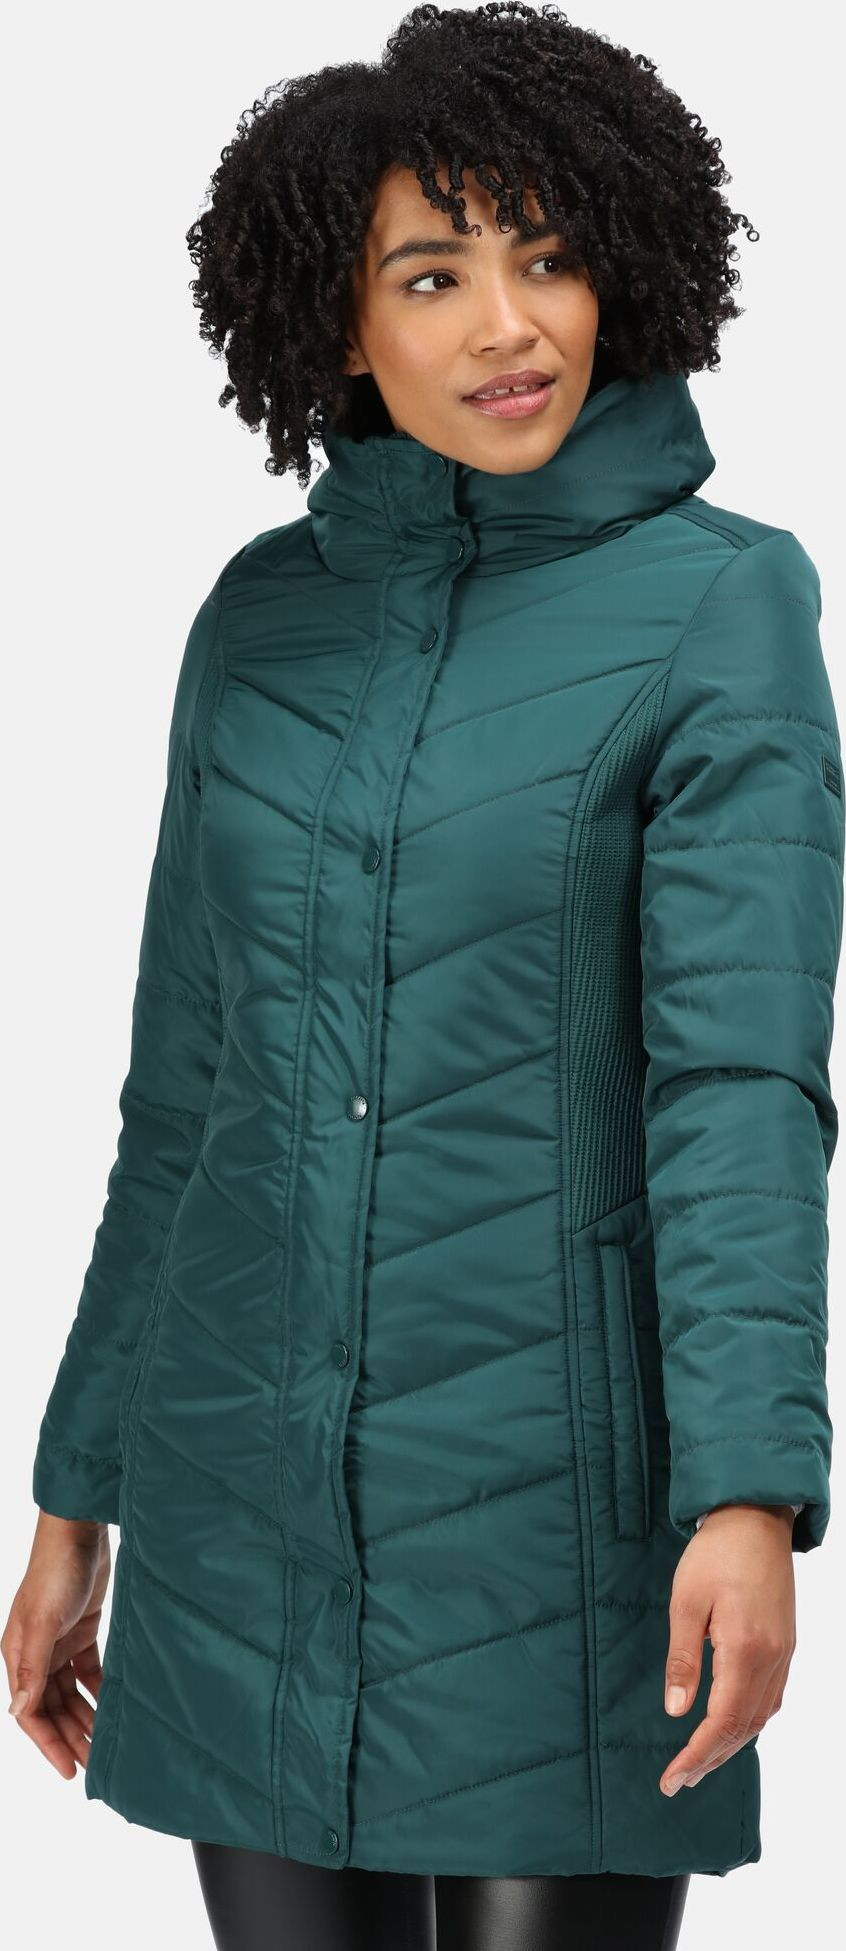 Dámský zimní kabát Regatta RWN186 Parthenia 3EB zelený - Regatta zelená XS-34